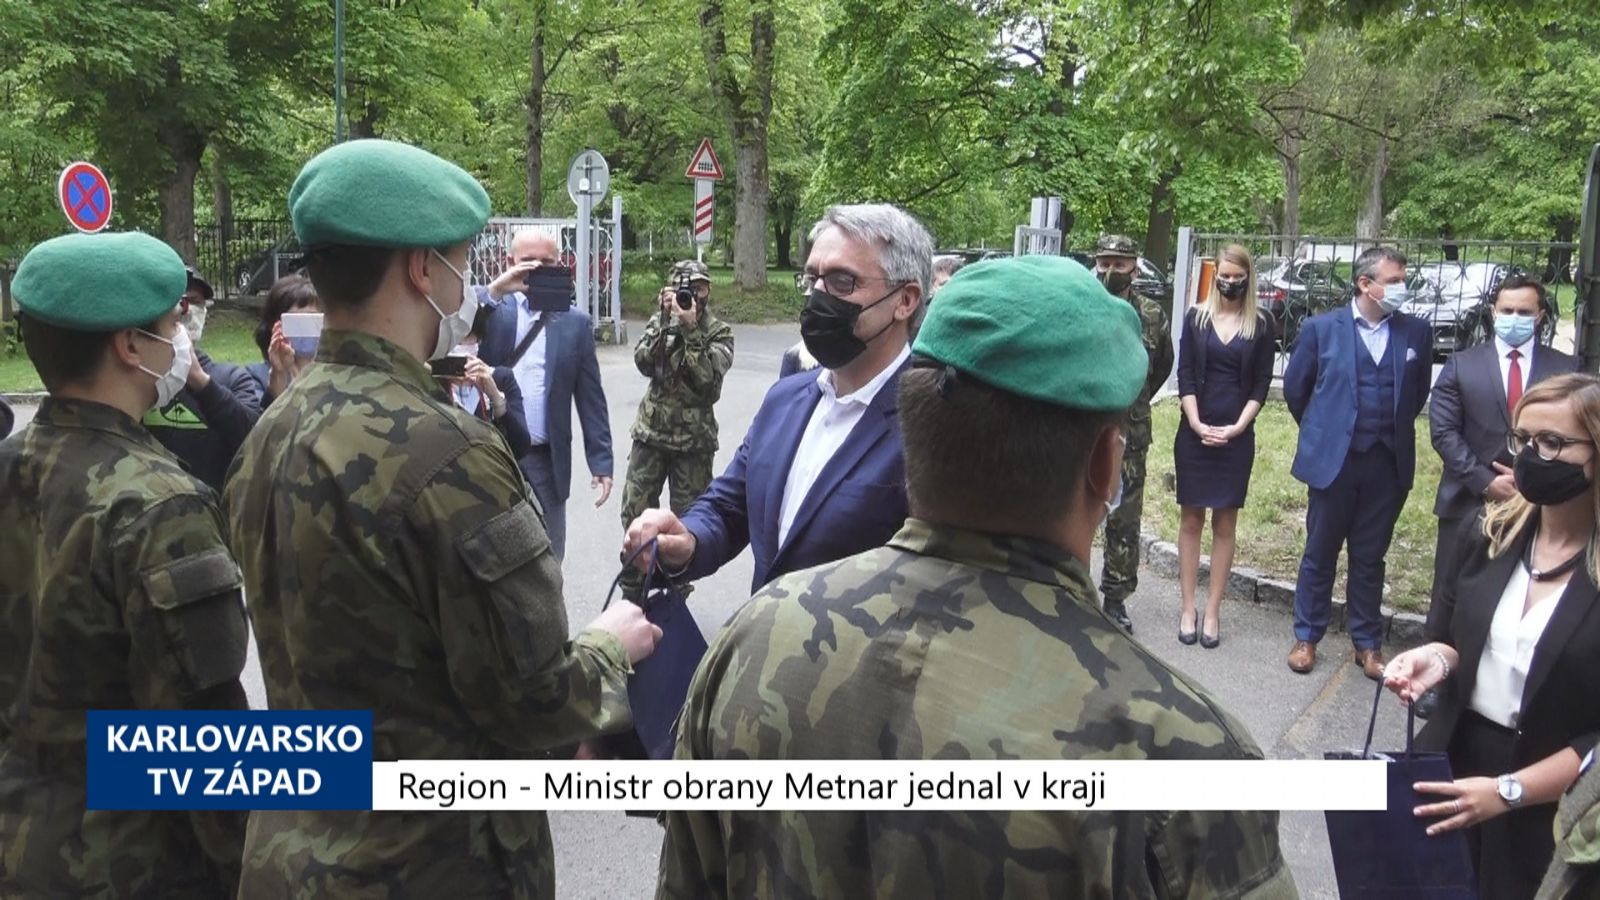 Region: Ministr obrany Metnar jednal v kraji (TV Západ)